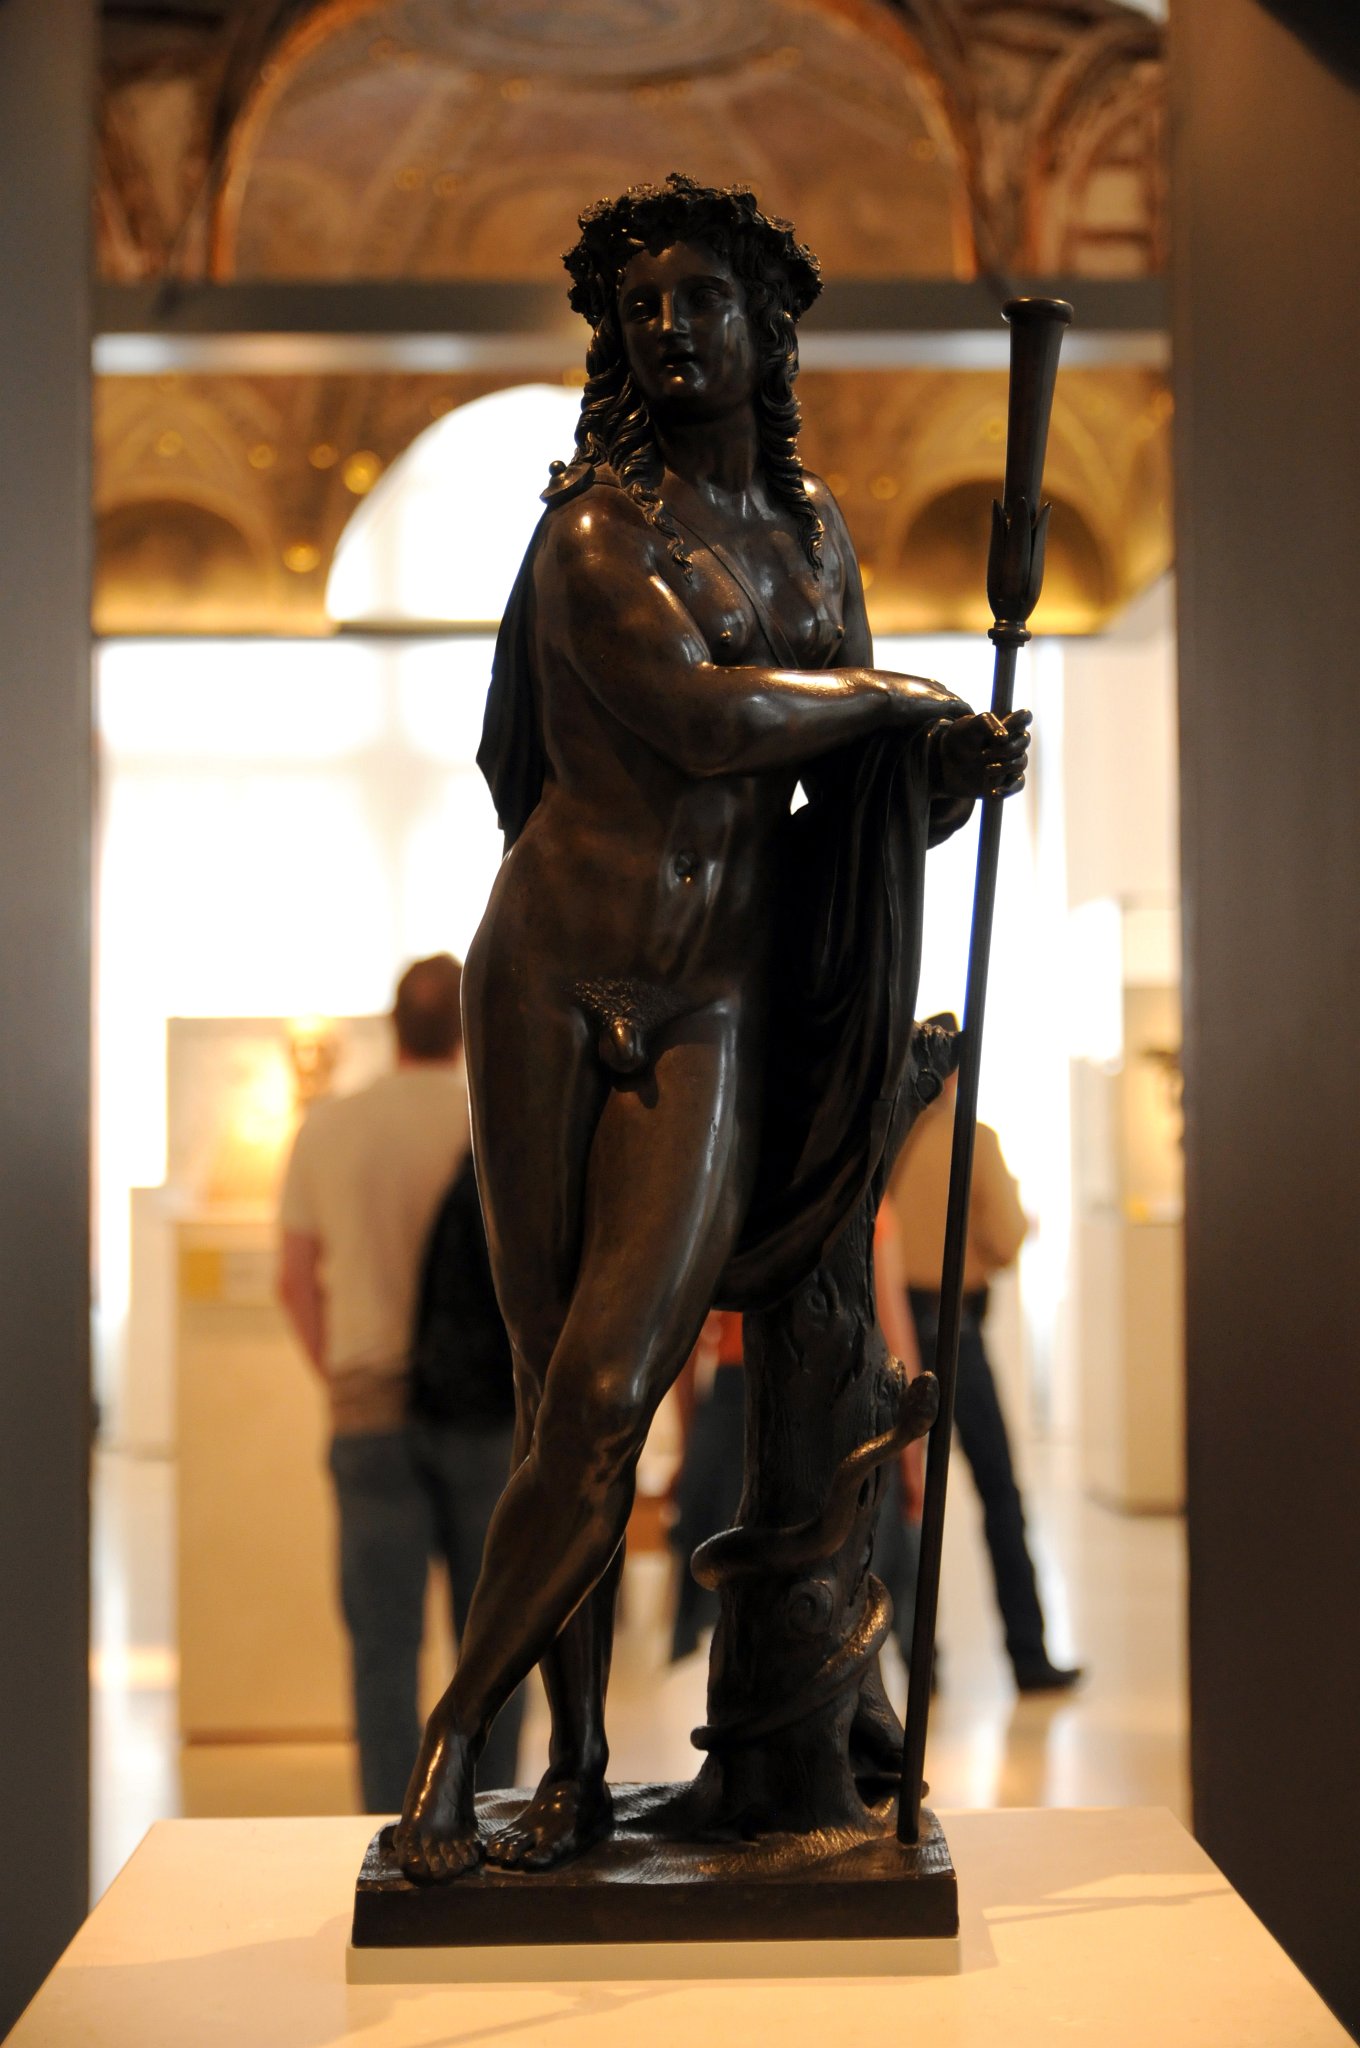 DSC_8131_1.jpg - Bronzová socha Apolla pocházející z období kolem roku 1500. Řecký bůh Apollo představoval ideál mužské krásy, ačkoli byl často líčen (stejně jako tady) s zženštilými rysy.